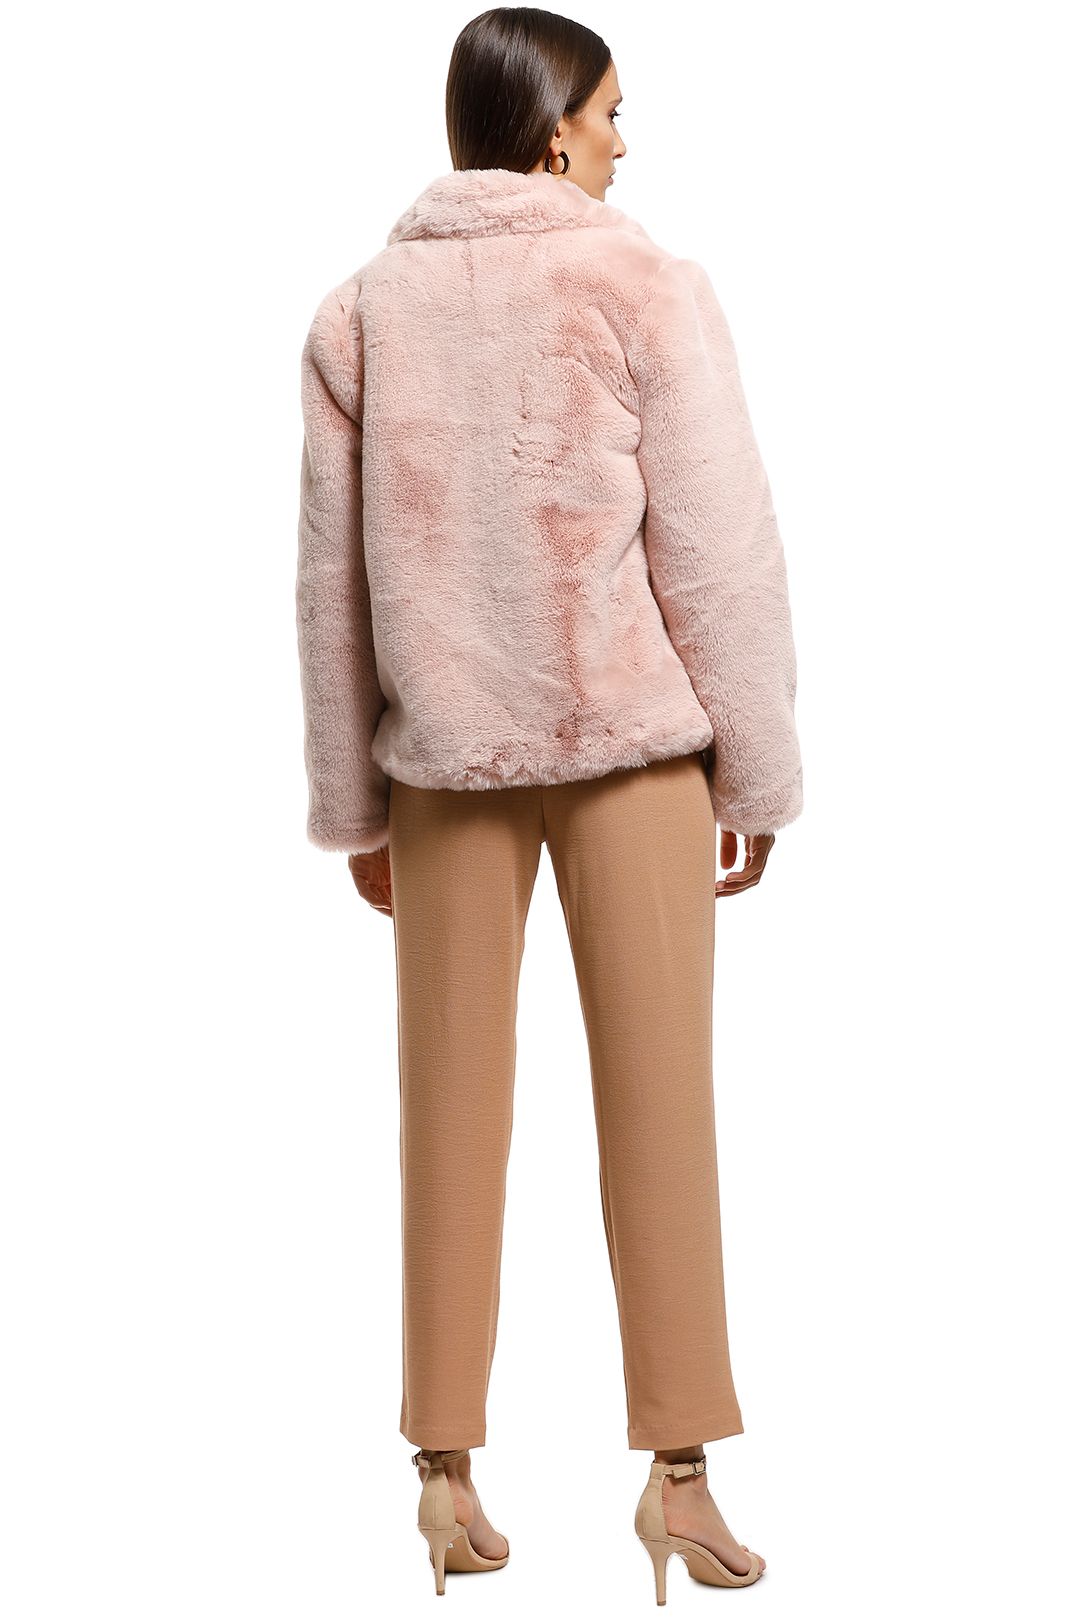 Cooper St - Blushing Fur Vest - Pink - Back